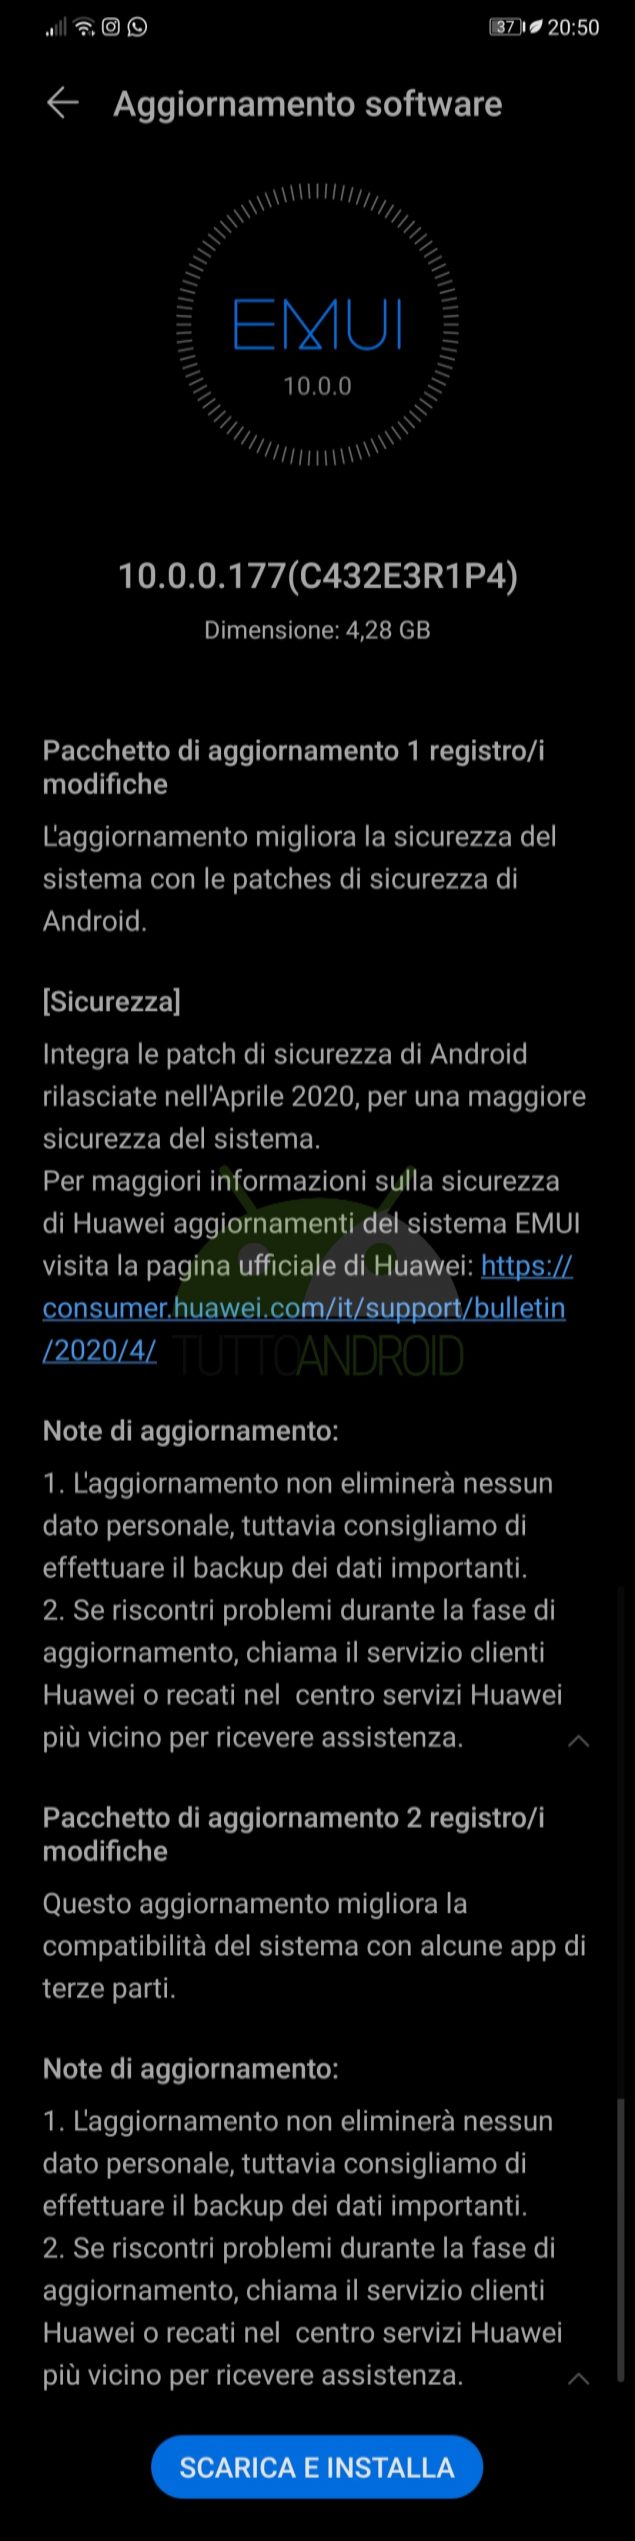 HONOR 10 aggiornamento EMUI 10 Android 10